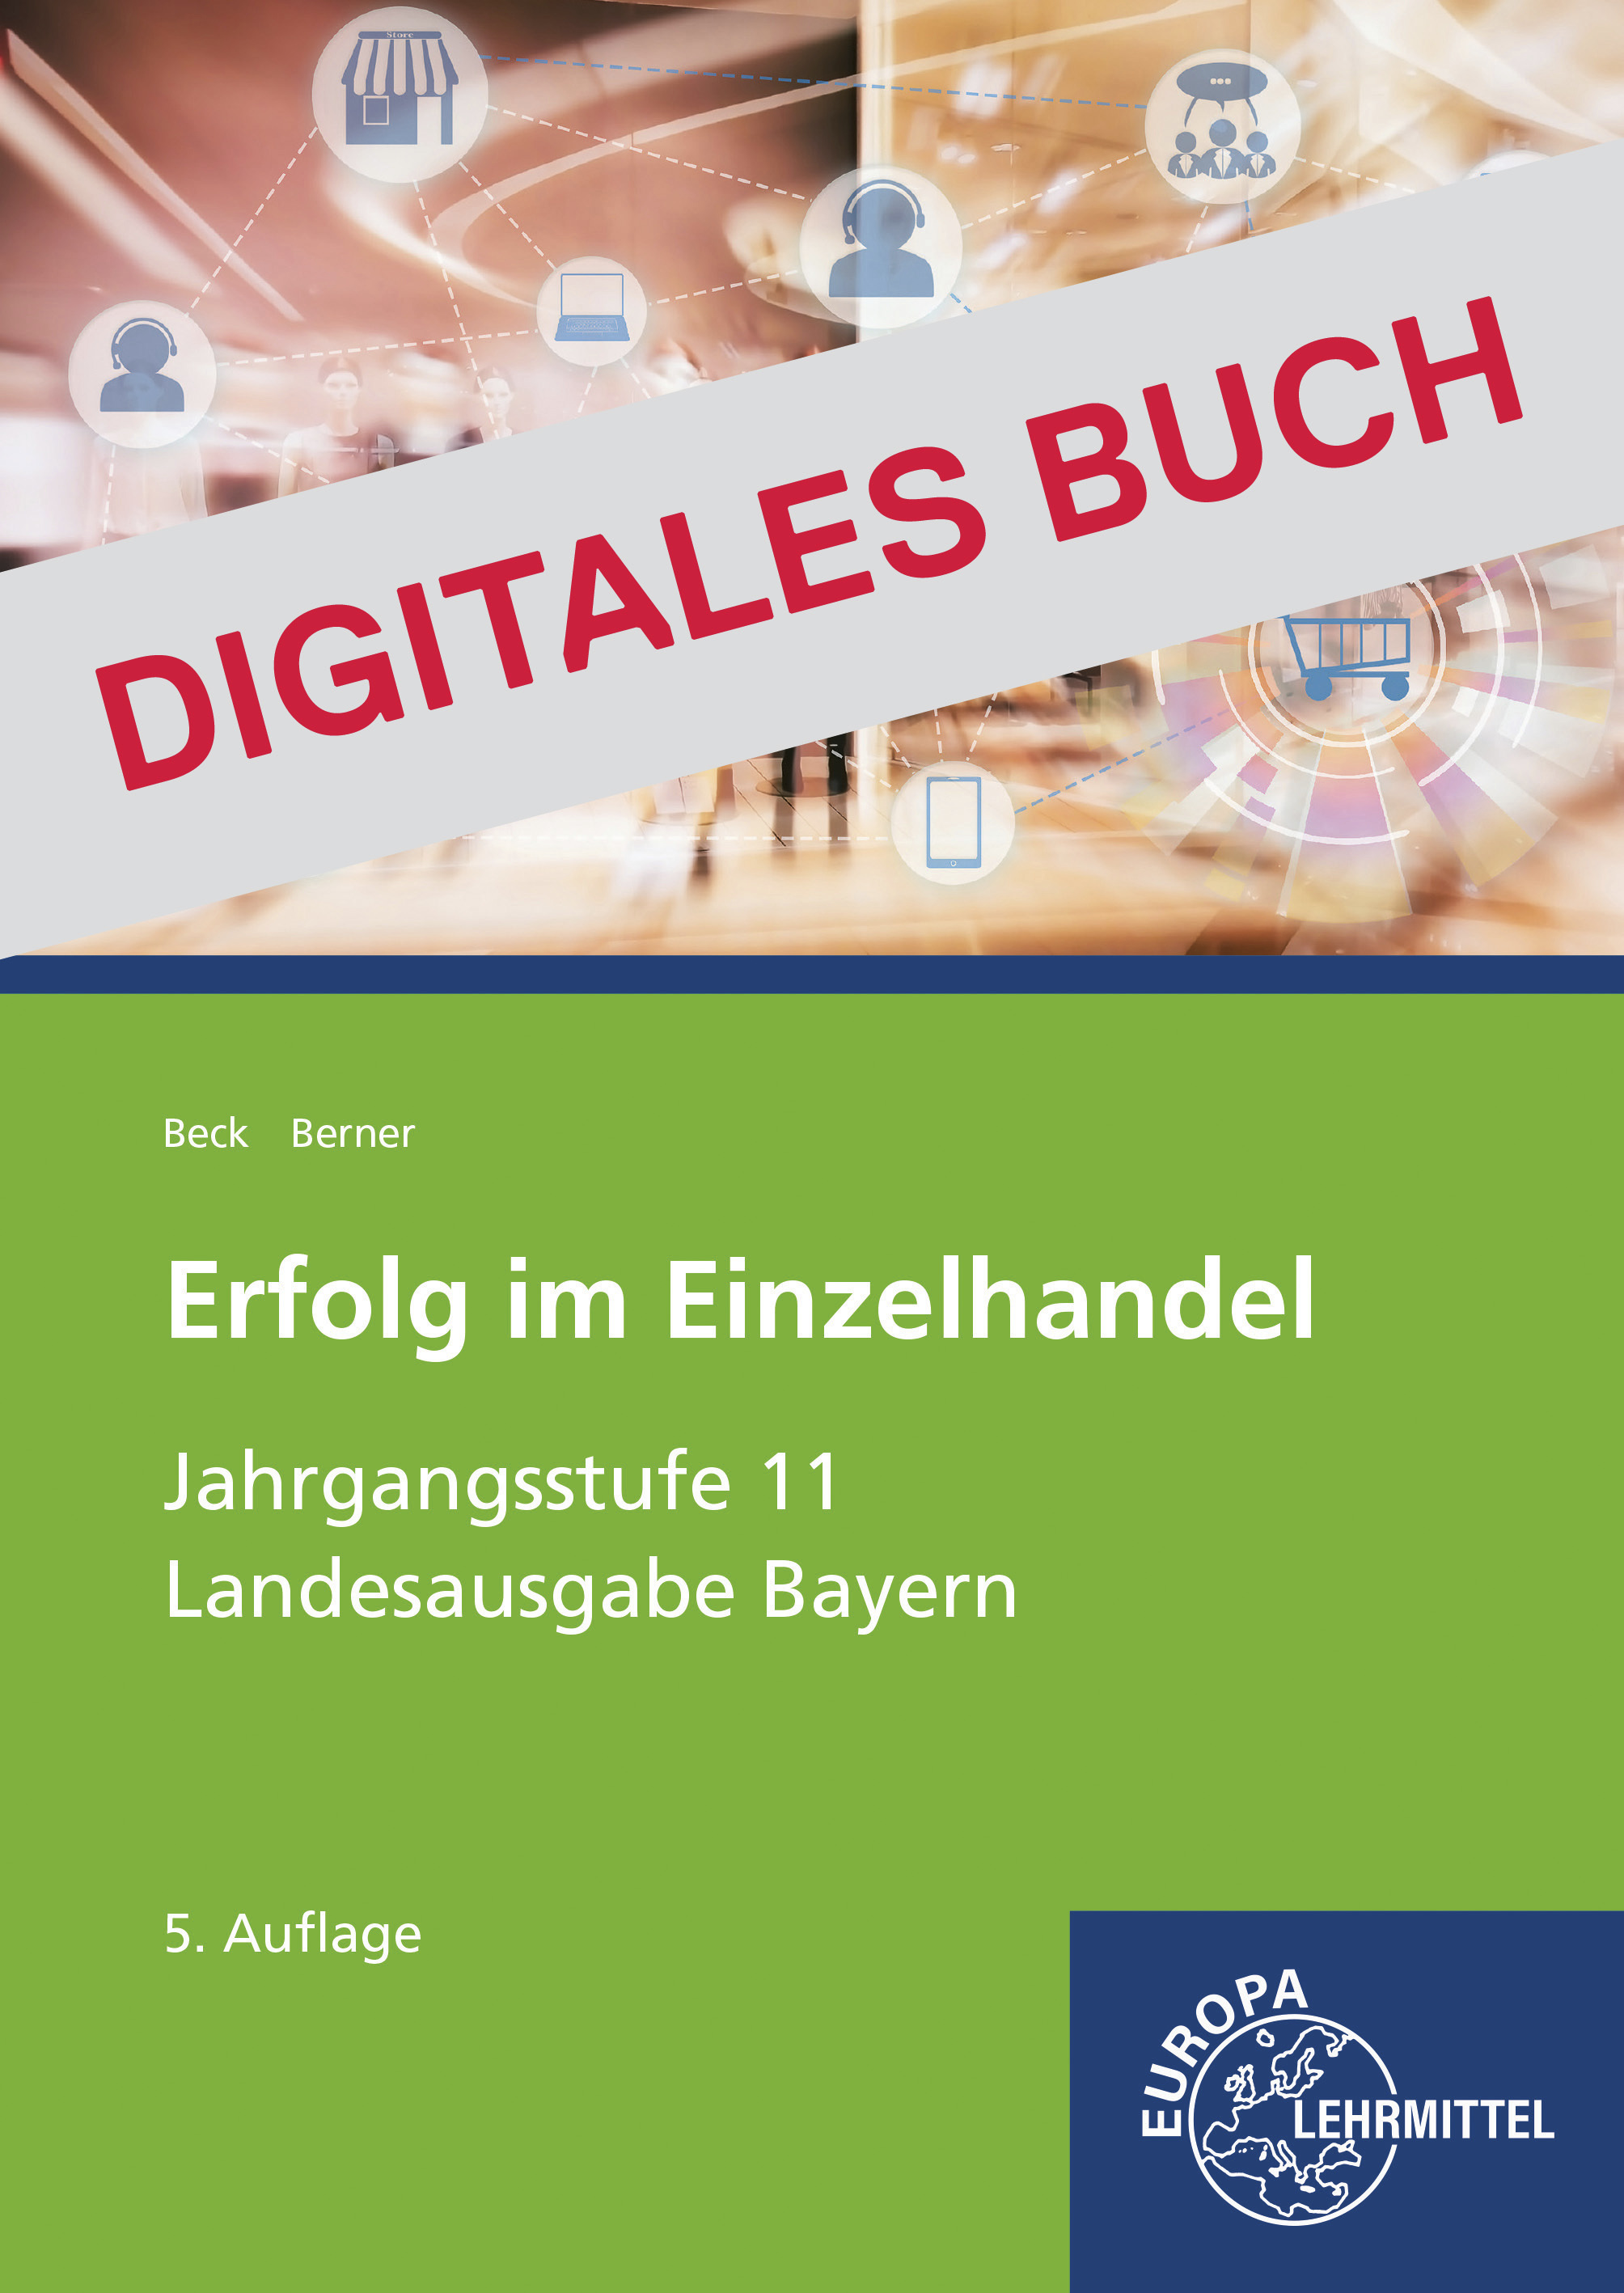 Erfolg im Einzelhandel Jgst. 11 (Bayern) - Digitales Buch